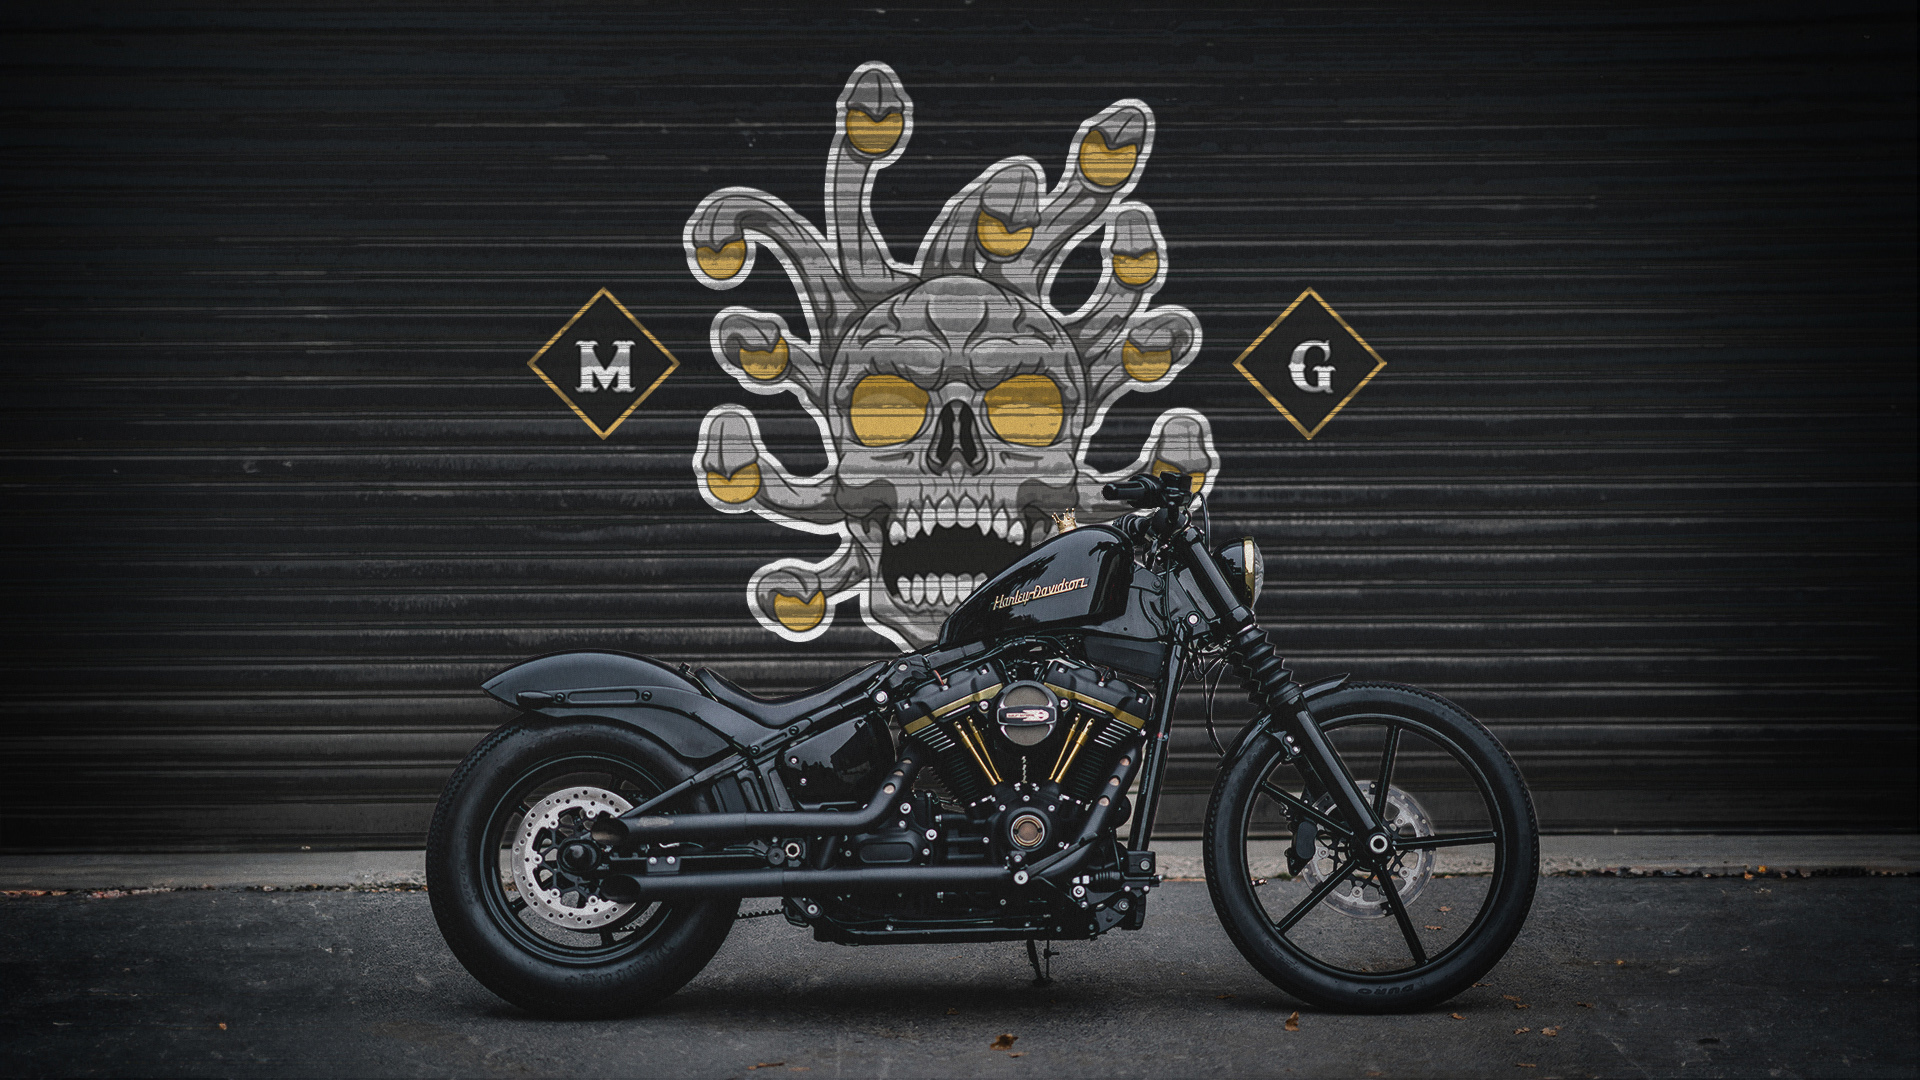 Beholder Motorcycle Club Branding